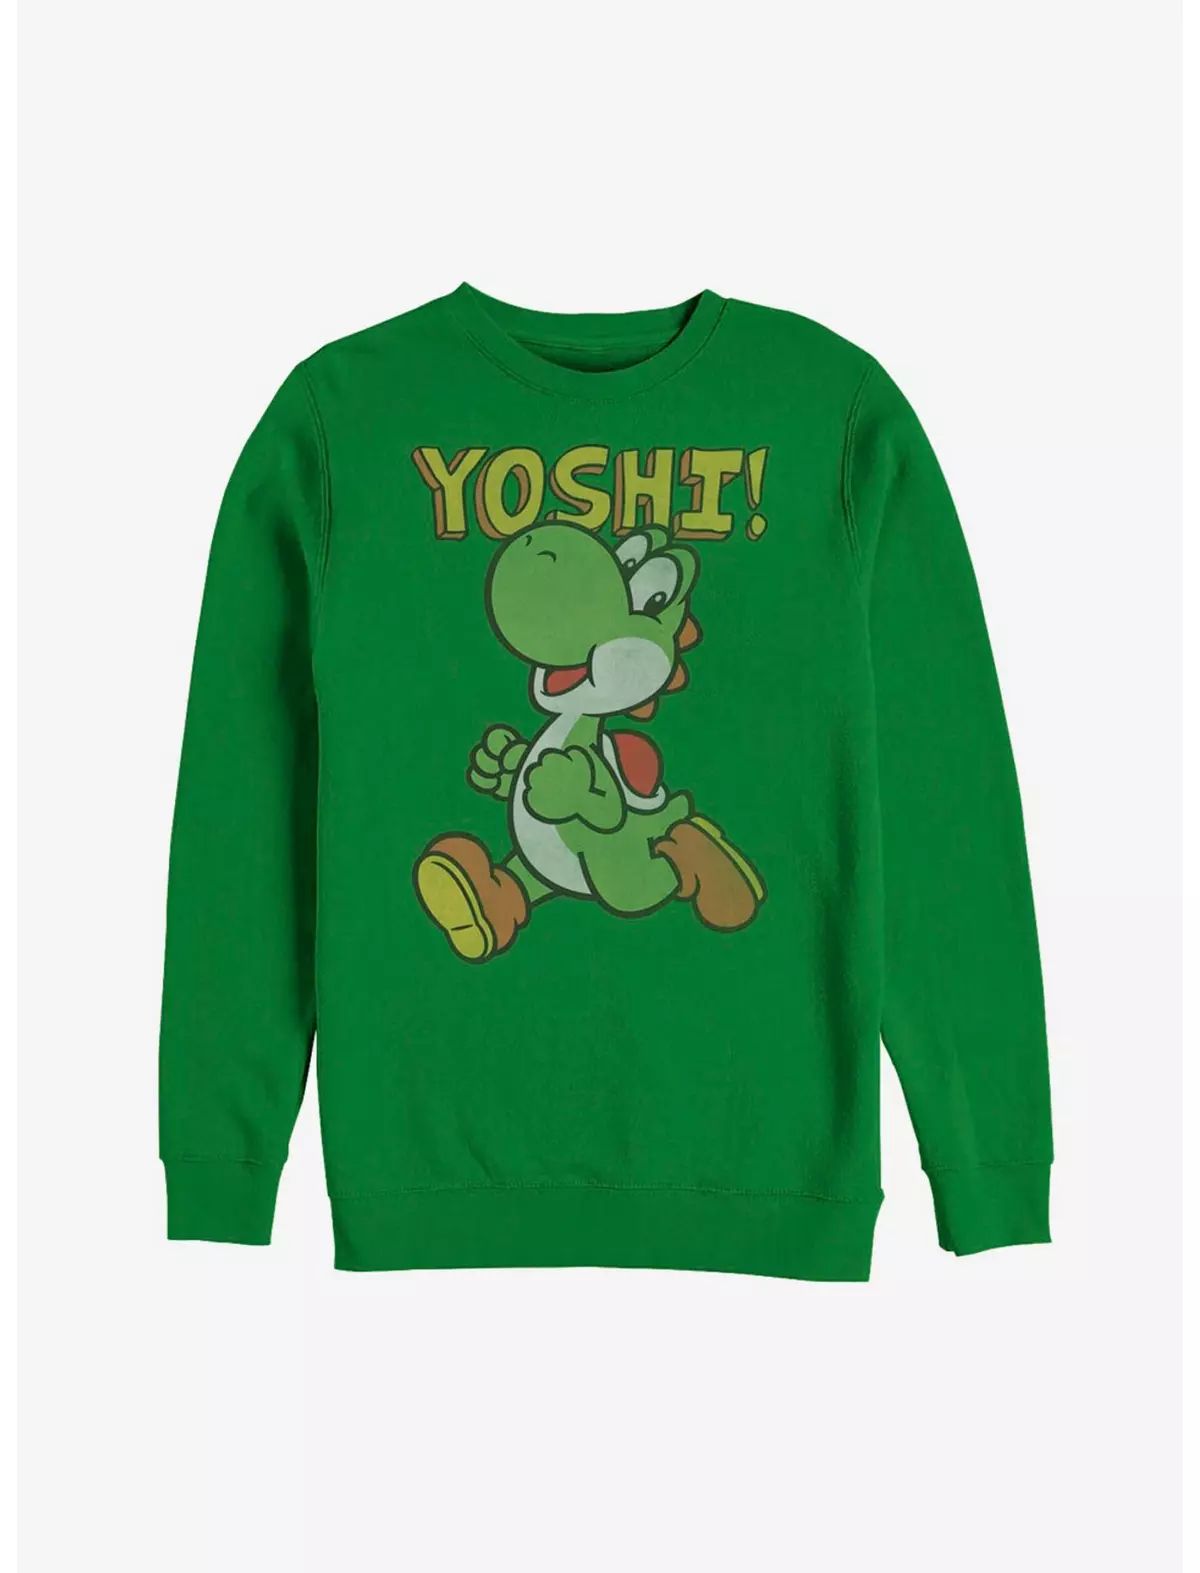 Nintendo Running Yoshi Sweatshirt | Hot Topic